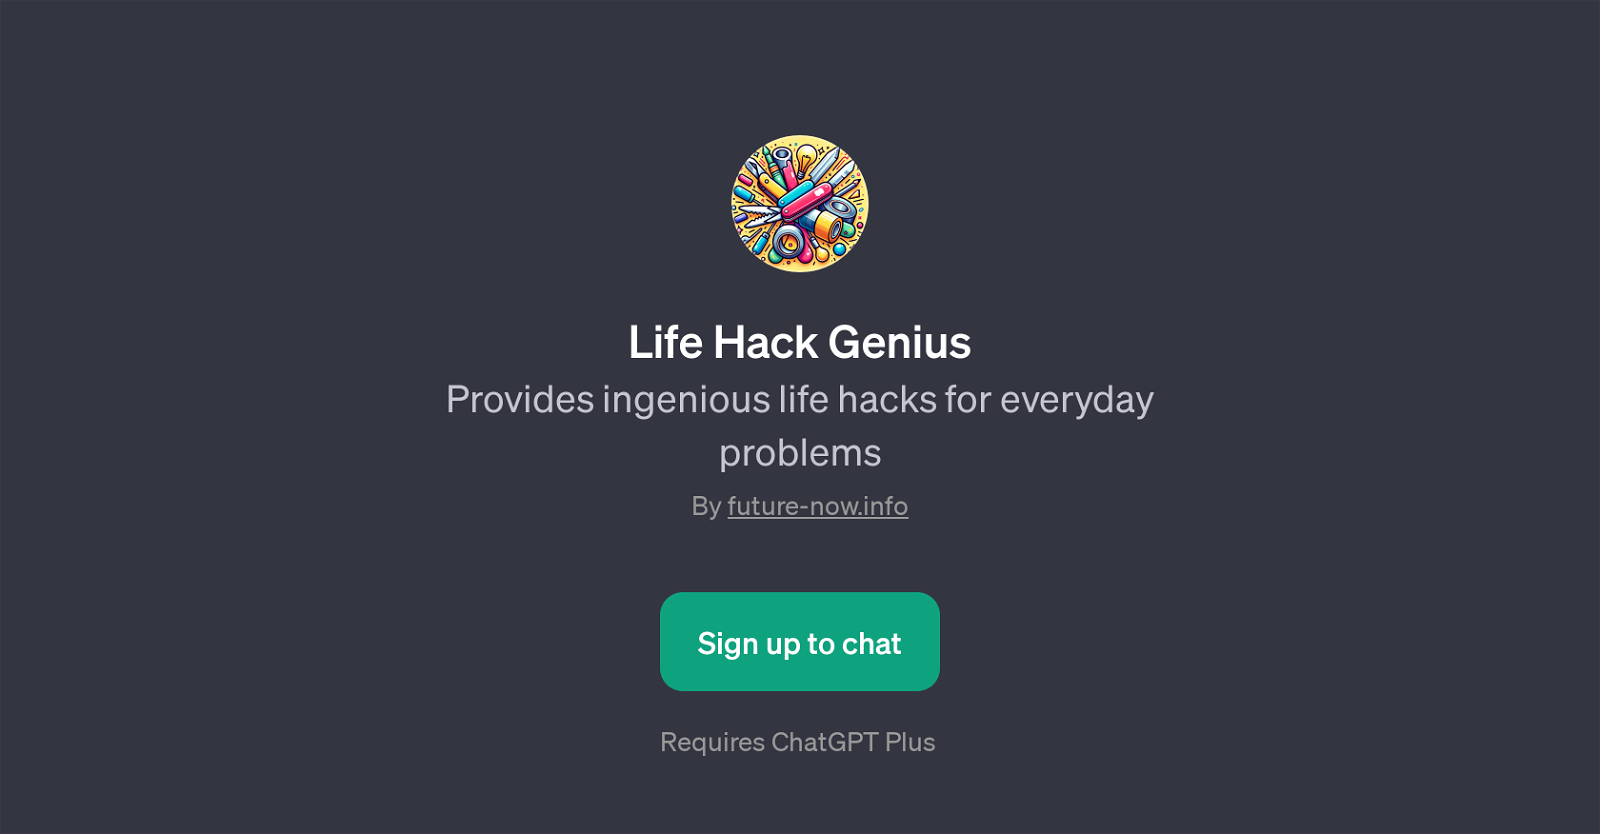 Life Hack Genius website